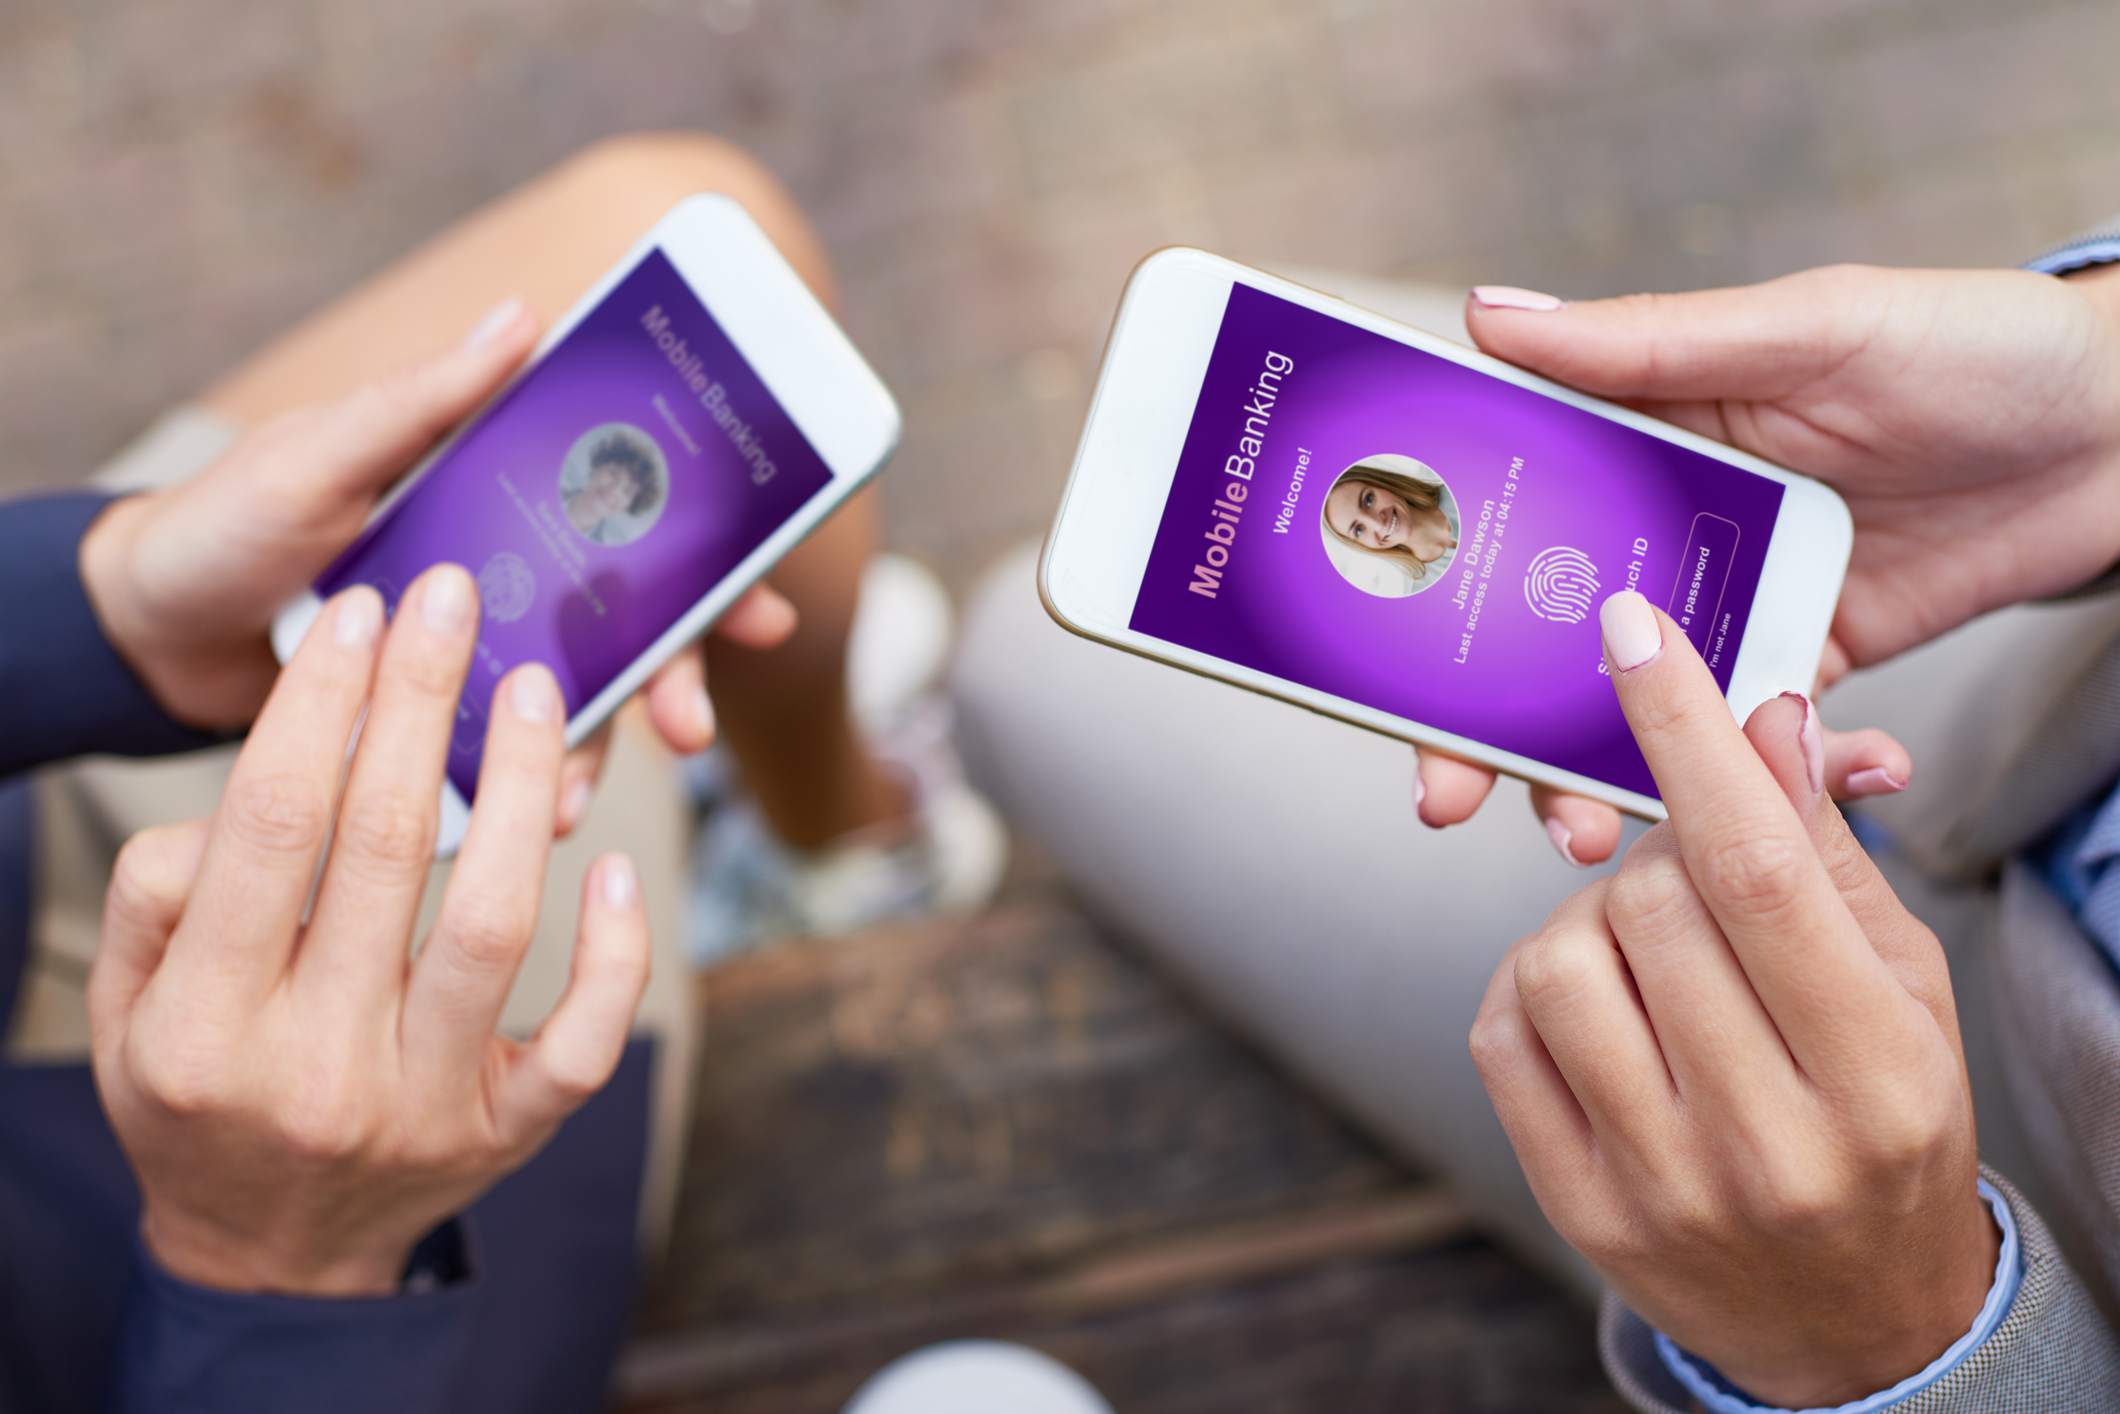 Een close-up van handen die smartphones vasthouden met biometrische toegang voor apps voor mobiel bankieren